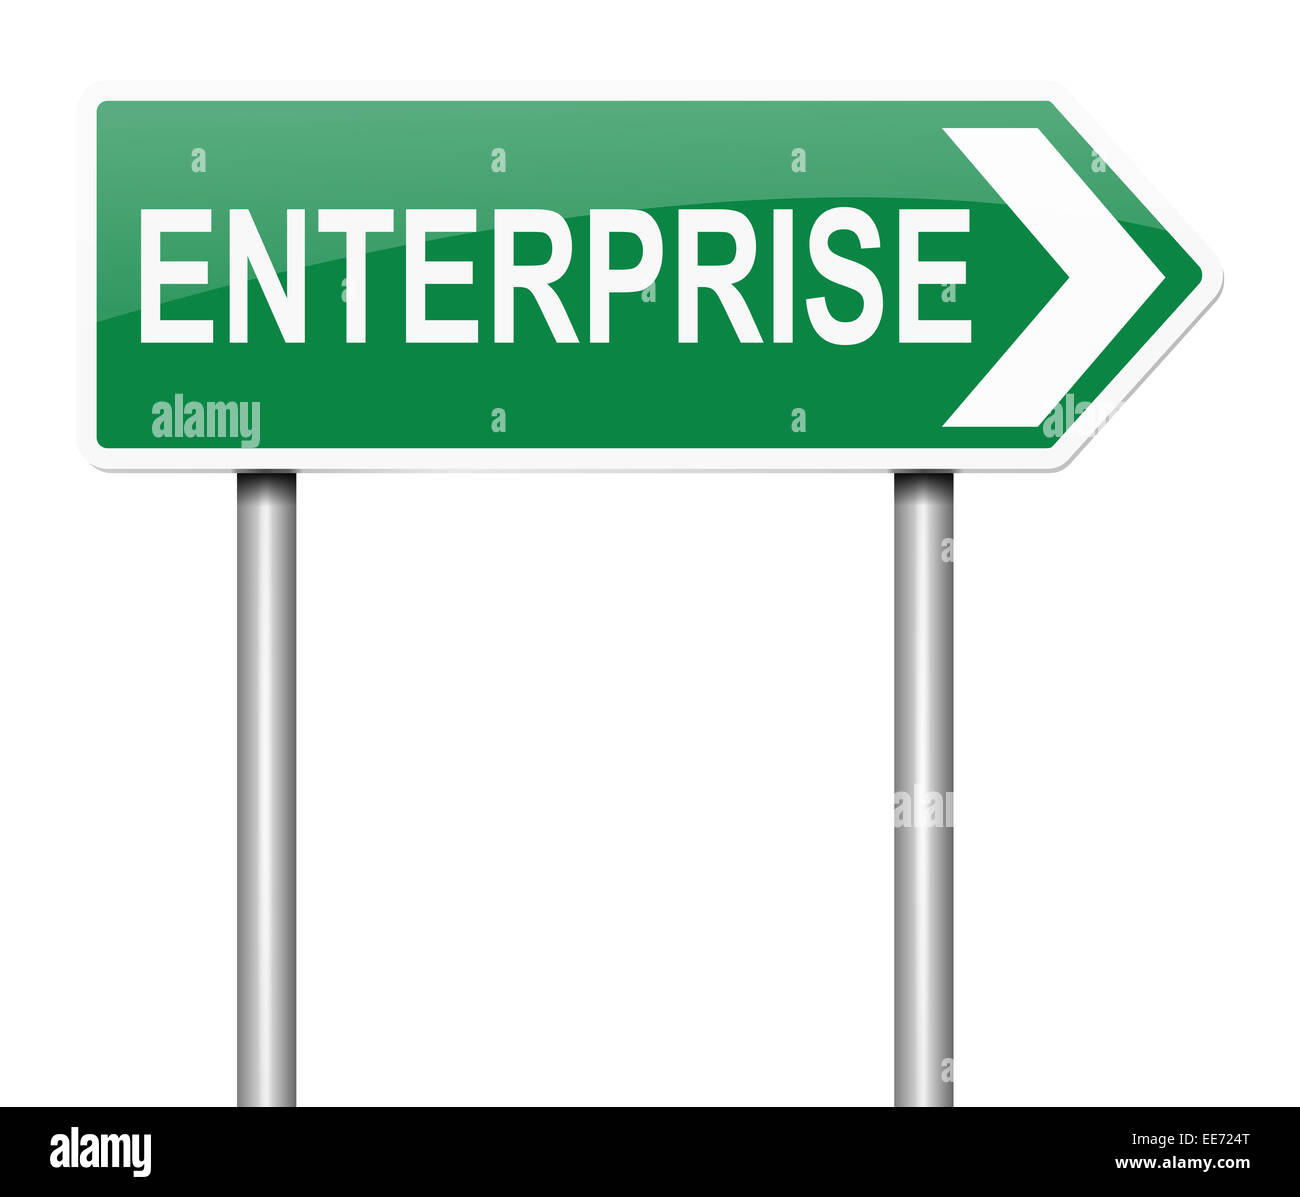 Enterprise concept. Stock Photo